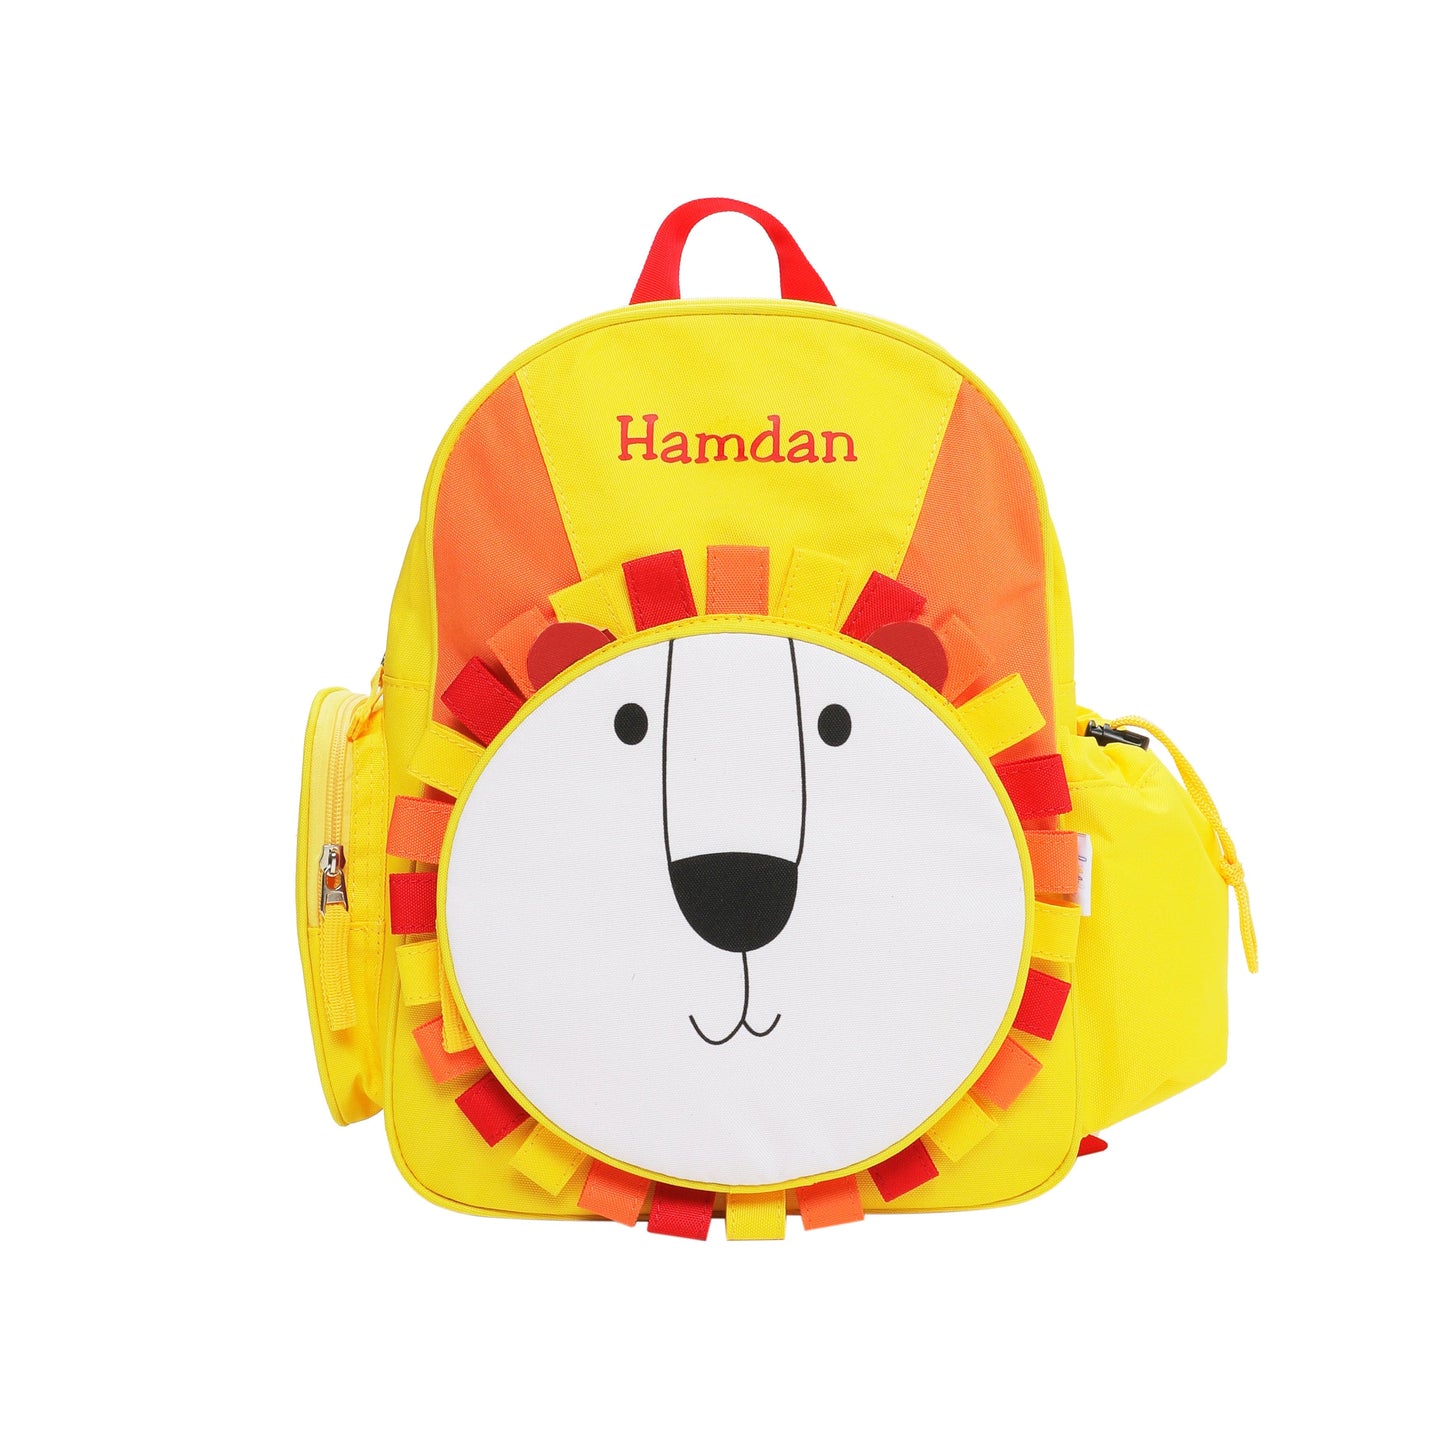 Lion Kids Backpack